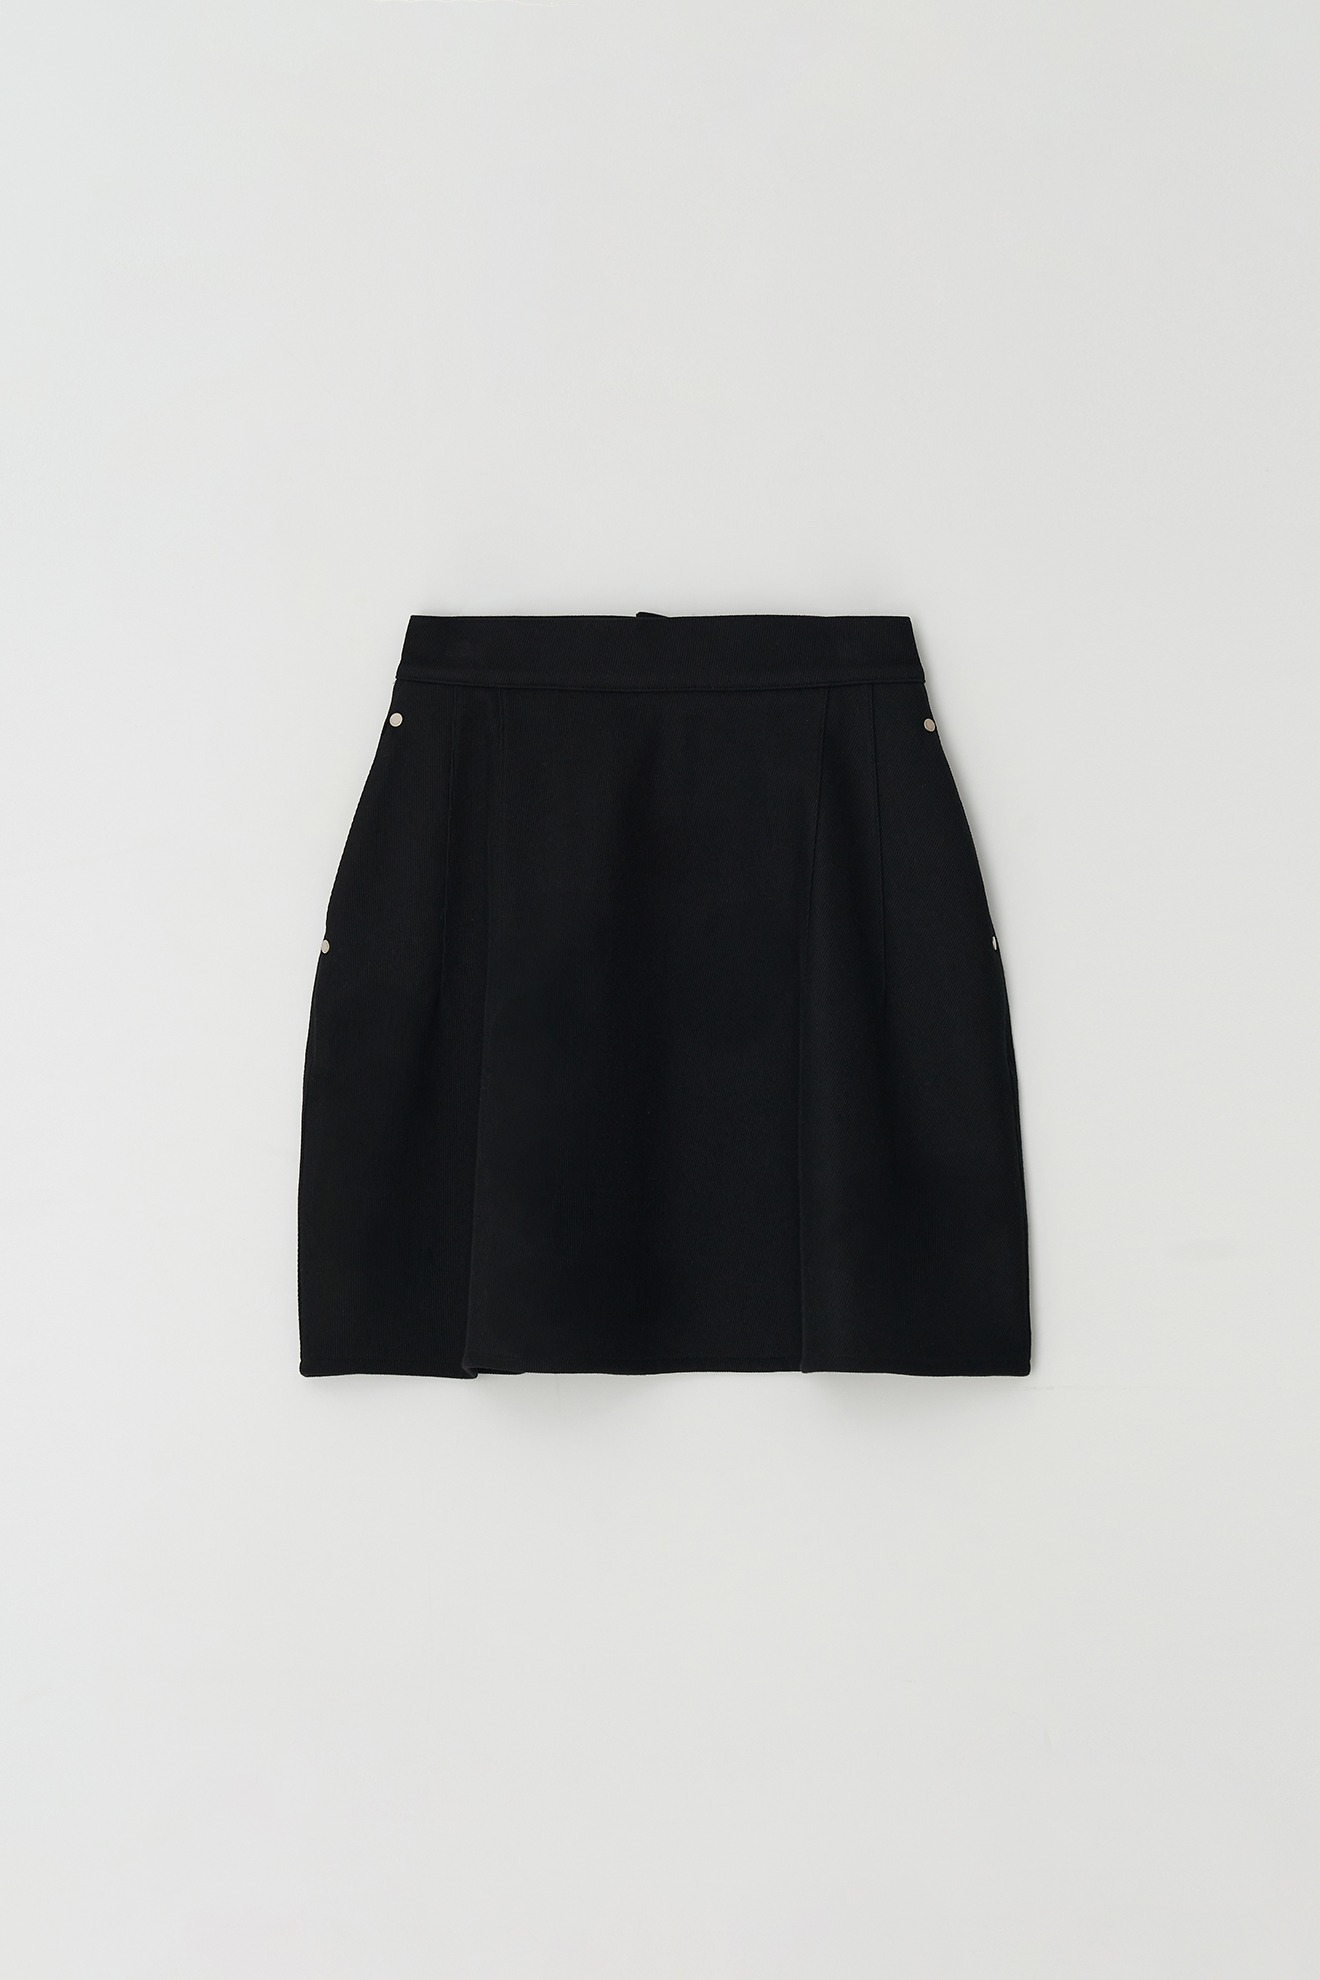 Pintuck Cotton Skirt (black)